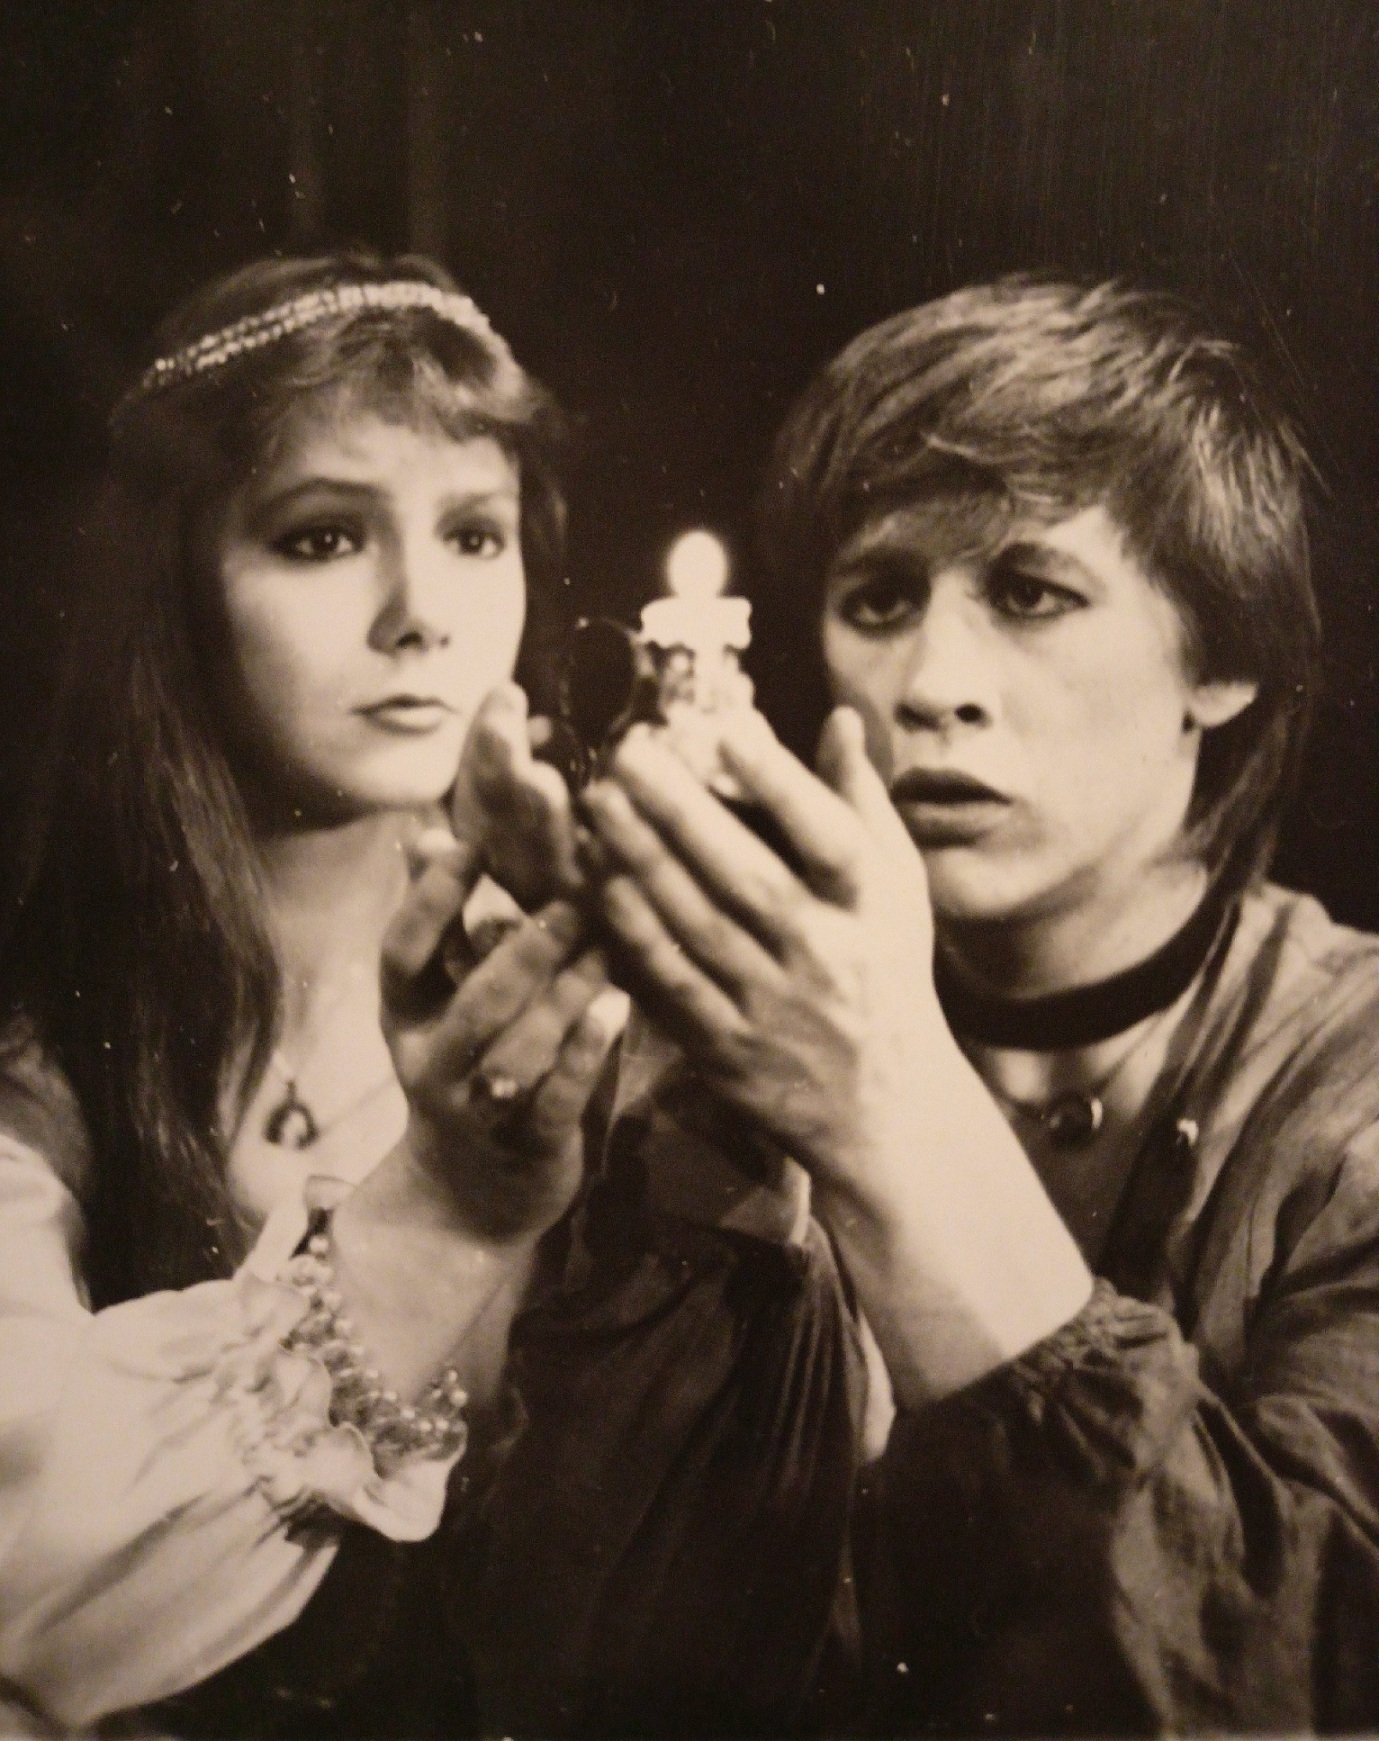 Спектакль «Ромео и Джульетта»